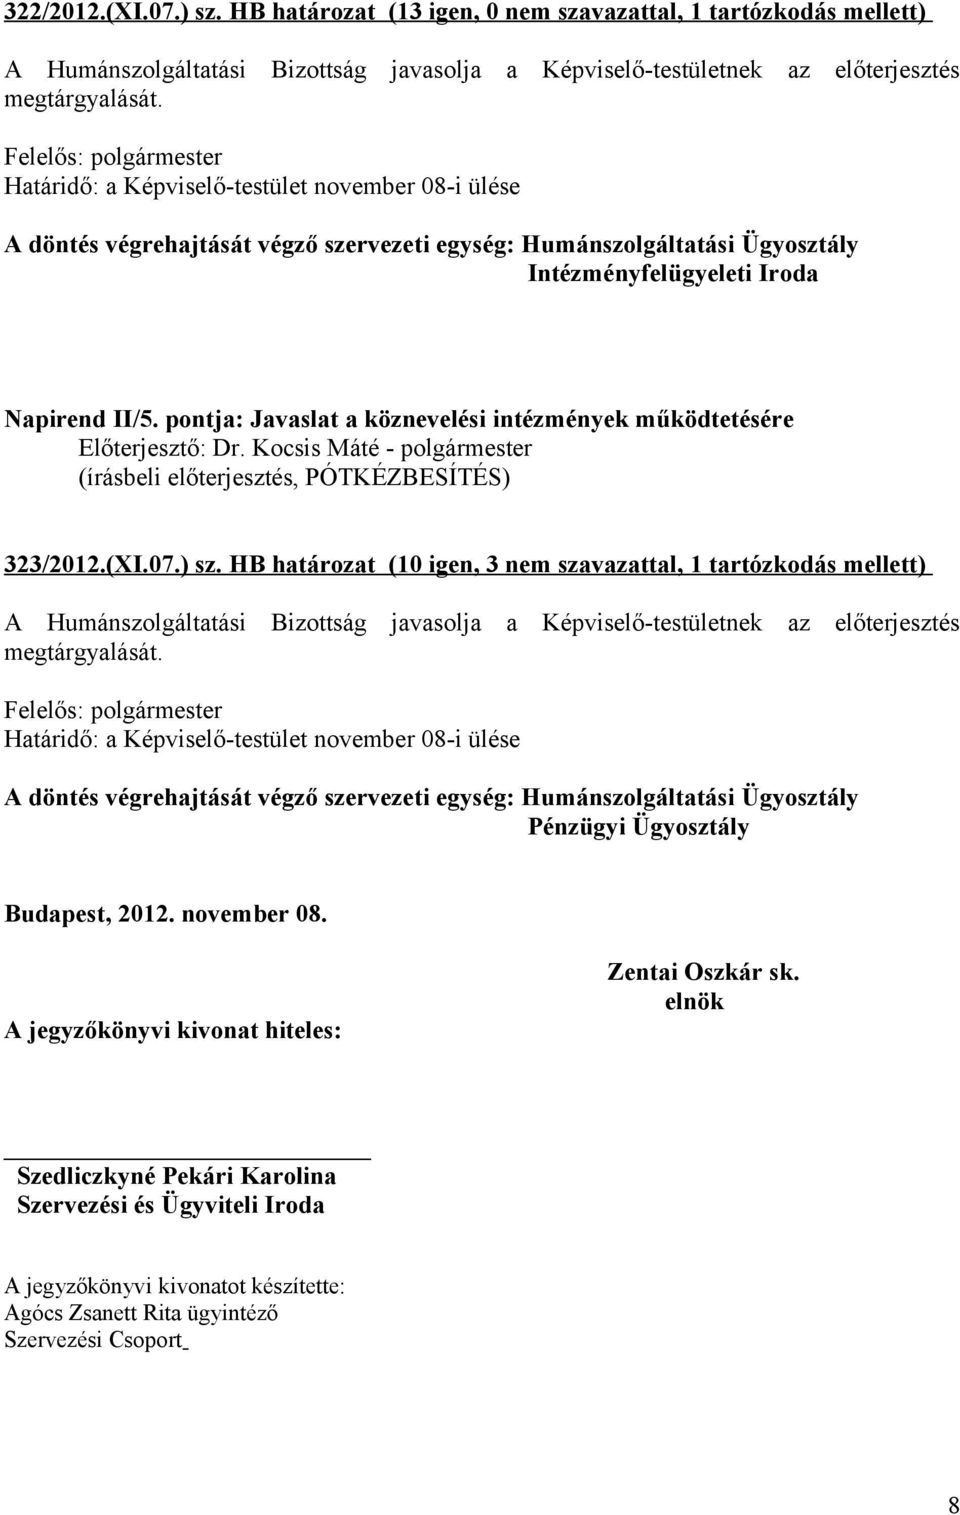 (XI.07.) sz. HB határozat (10 igen, 3 nem szavazattal, 1 tartózkodás mellett) Pénzügyi Ügyosztály Budapest, 2012. november 08.